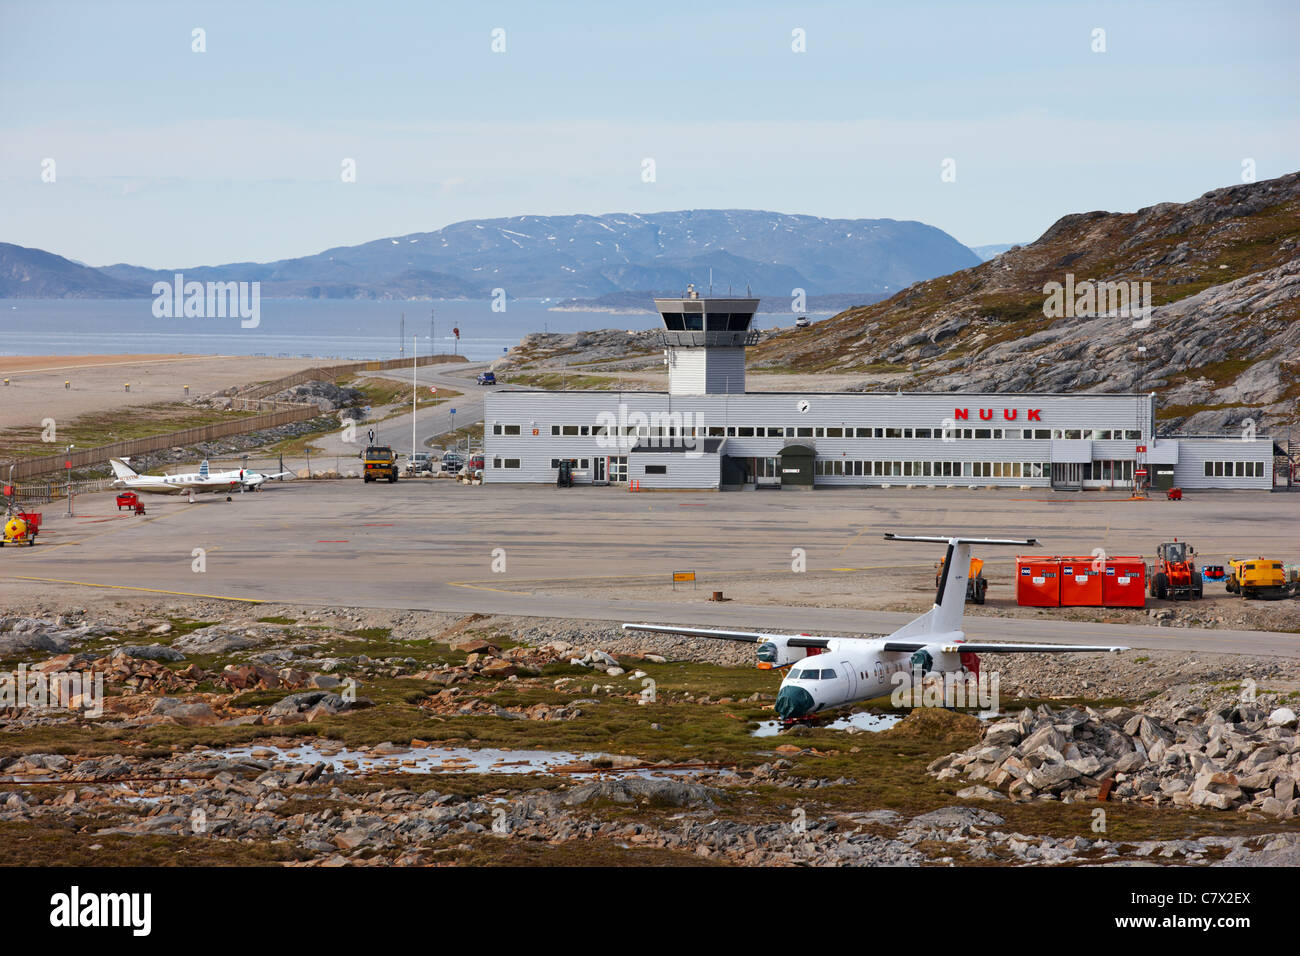 L'aéroport de Nuuk, Groenland Banque D'Images